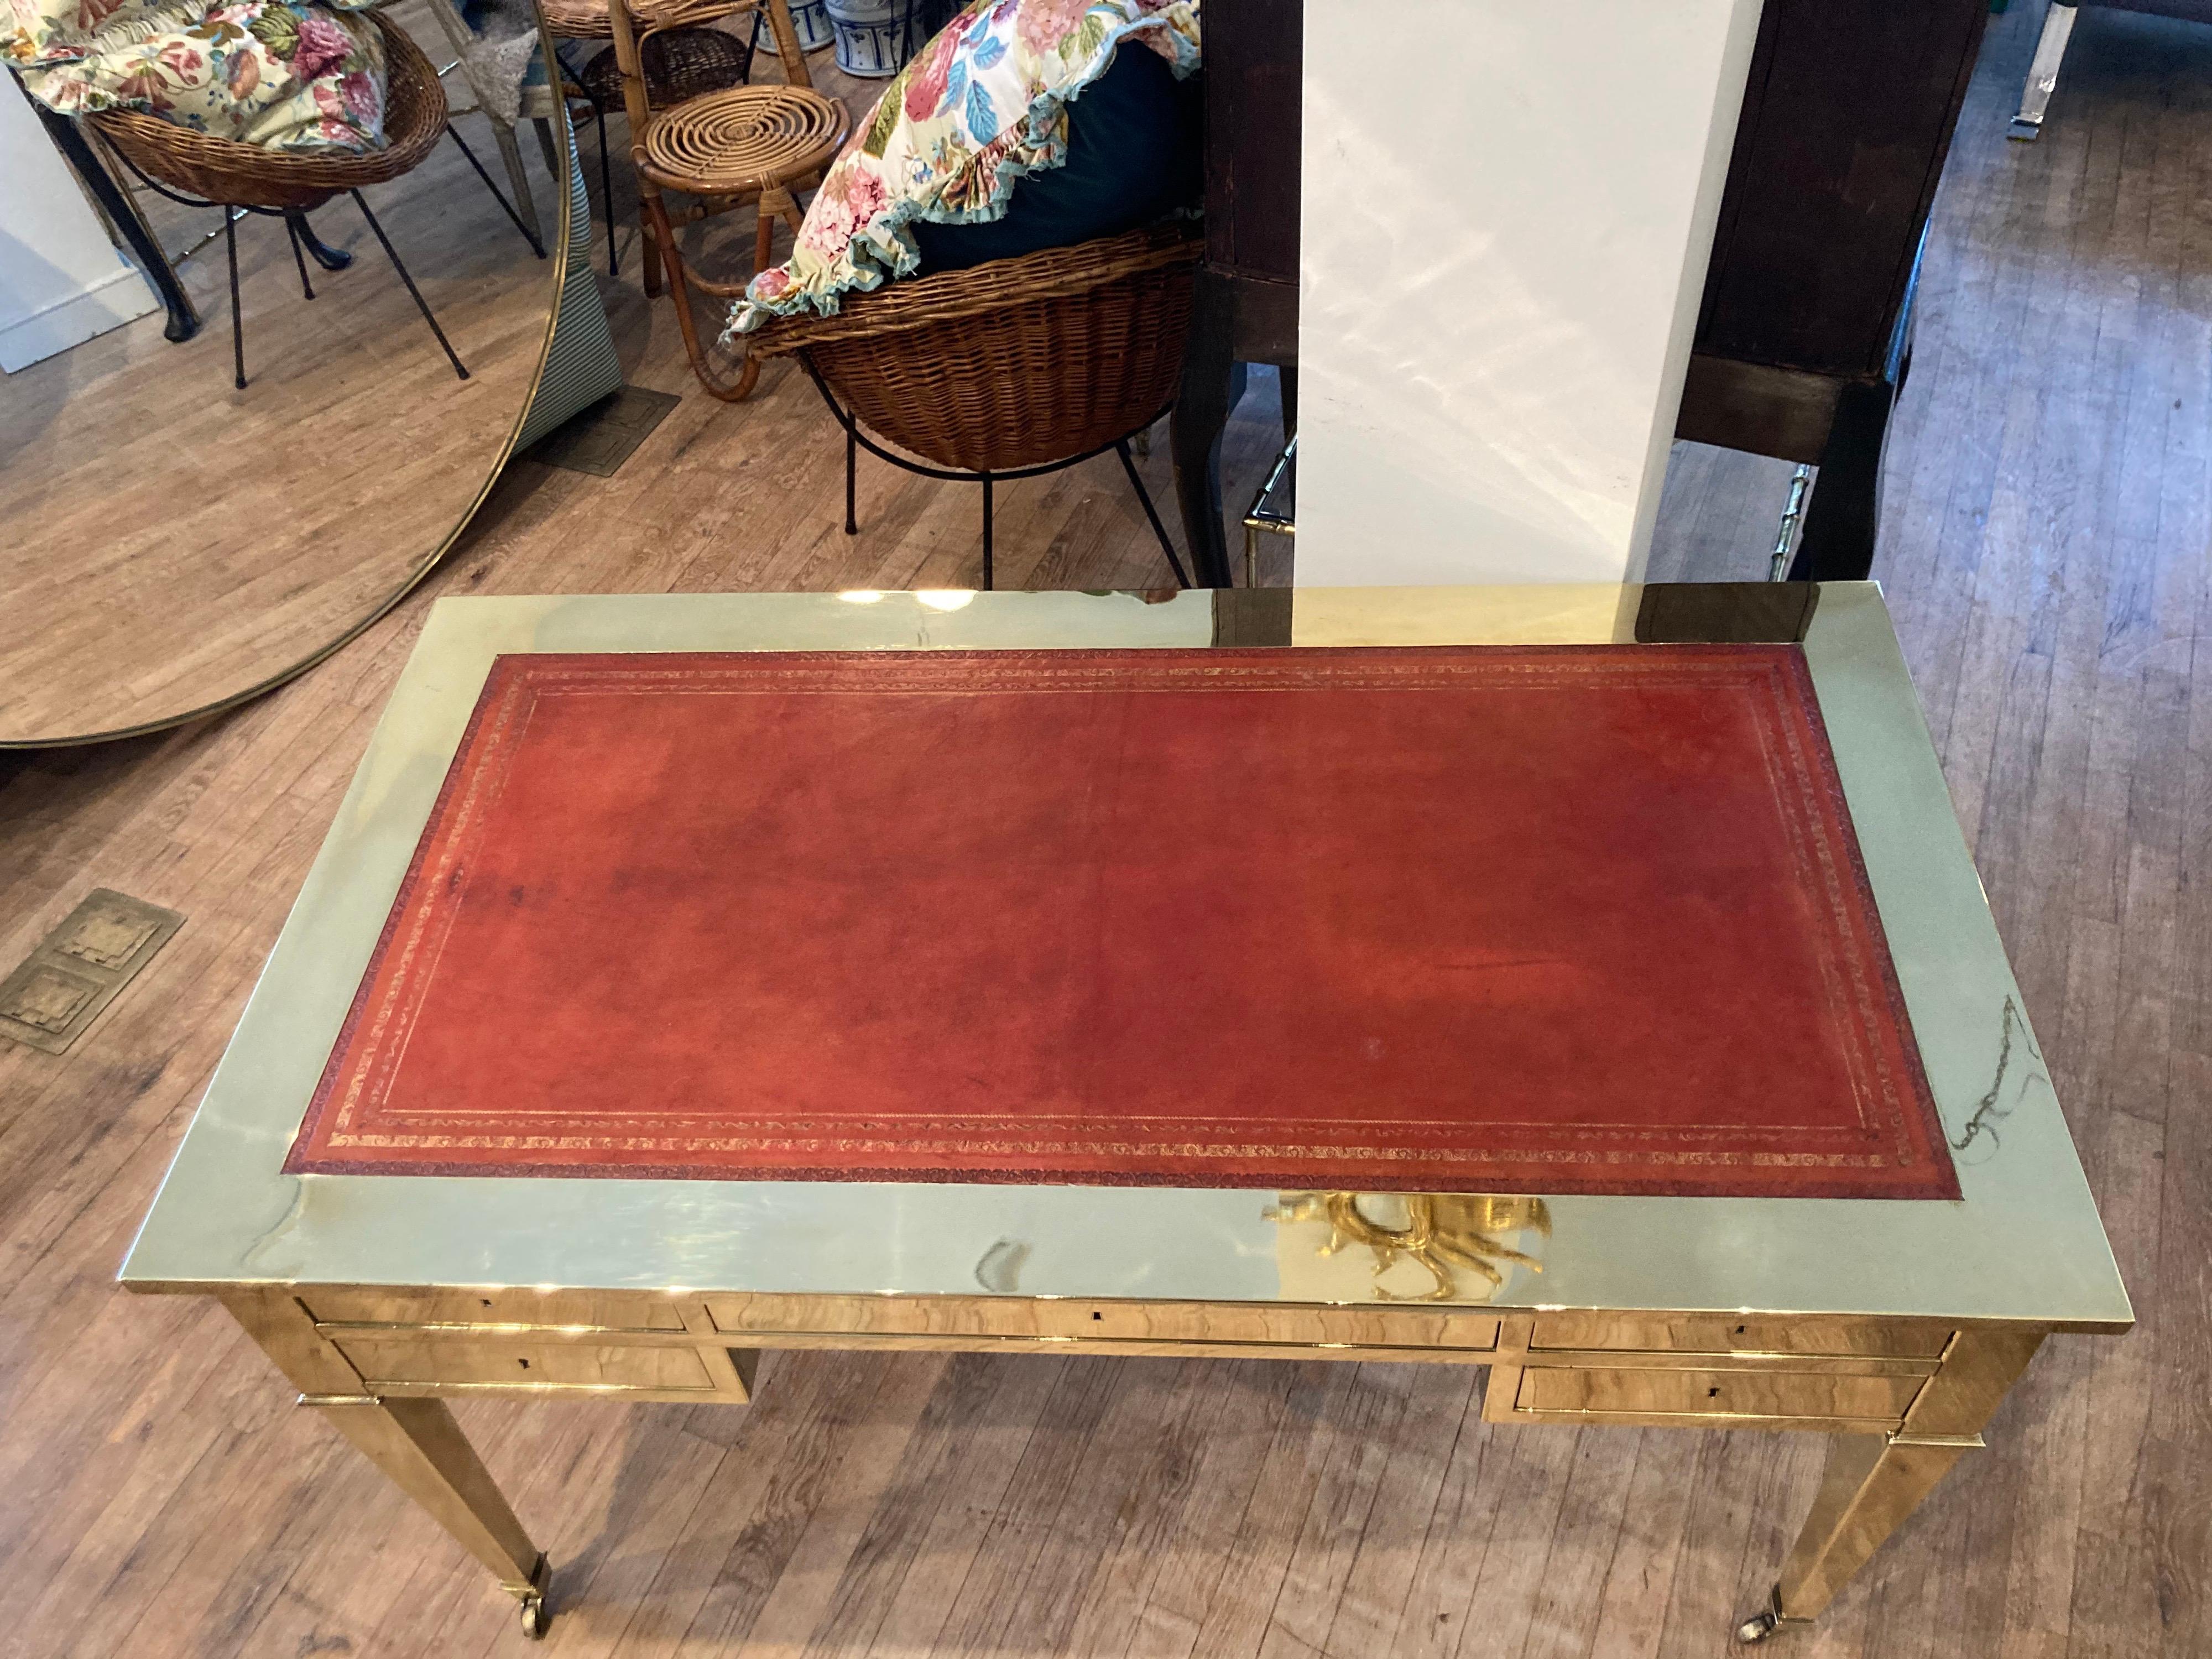 Chic Messing bureau plat Stil Schreibtisch mit rotem Leder einfügen..... es wurde von seinem Lack entfernt und poliert.... leichte Abnutzung auf Leder oben, wie in Fotos gezeigt..... in Italien hergestellt.